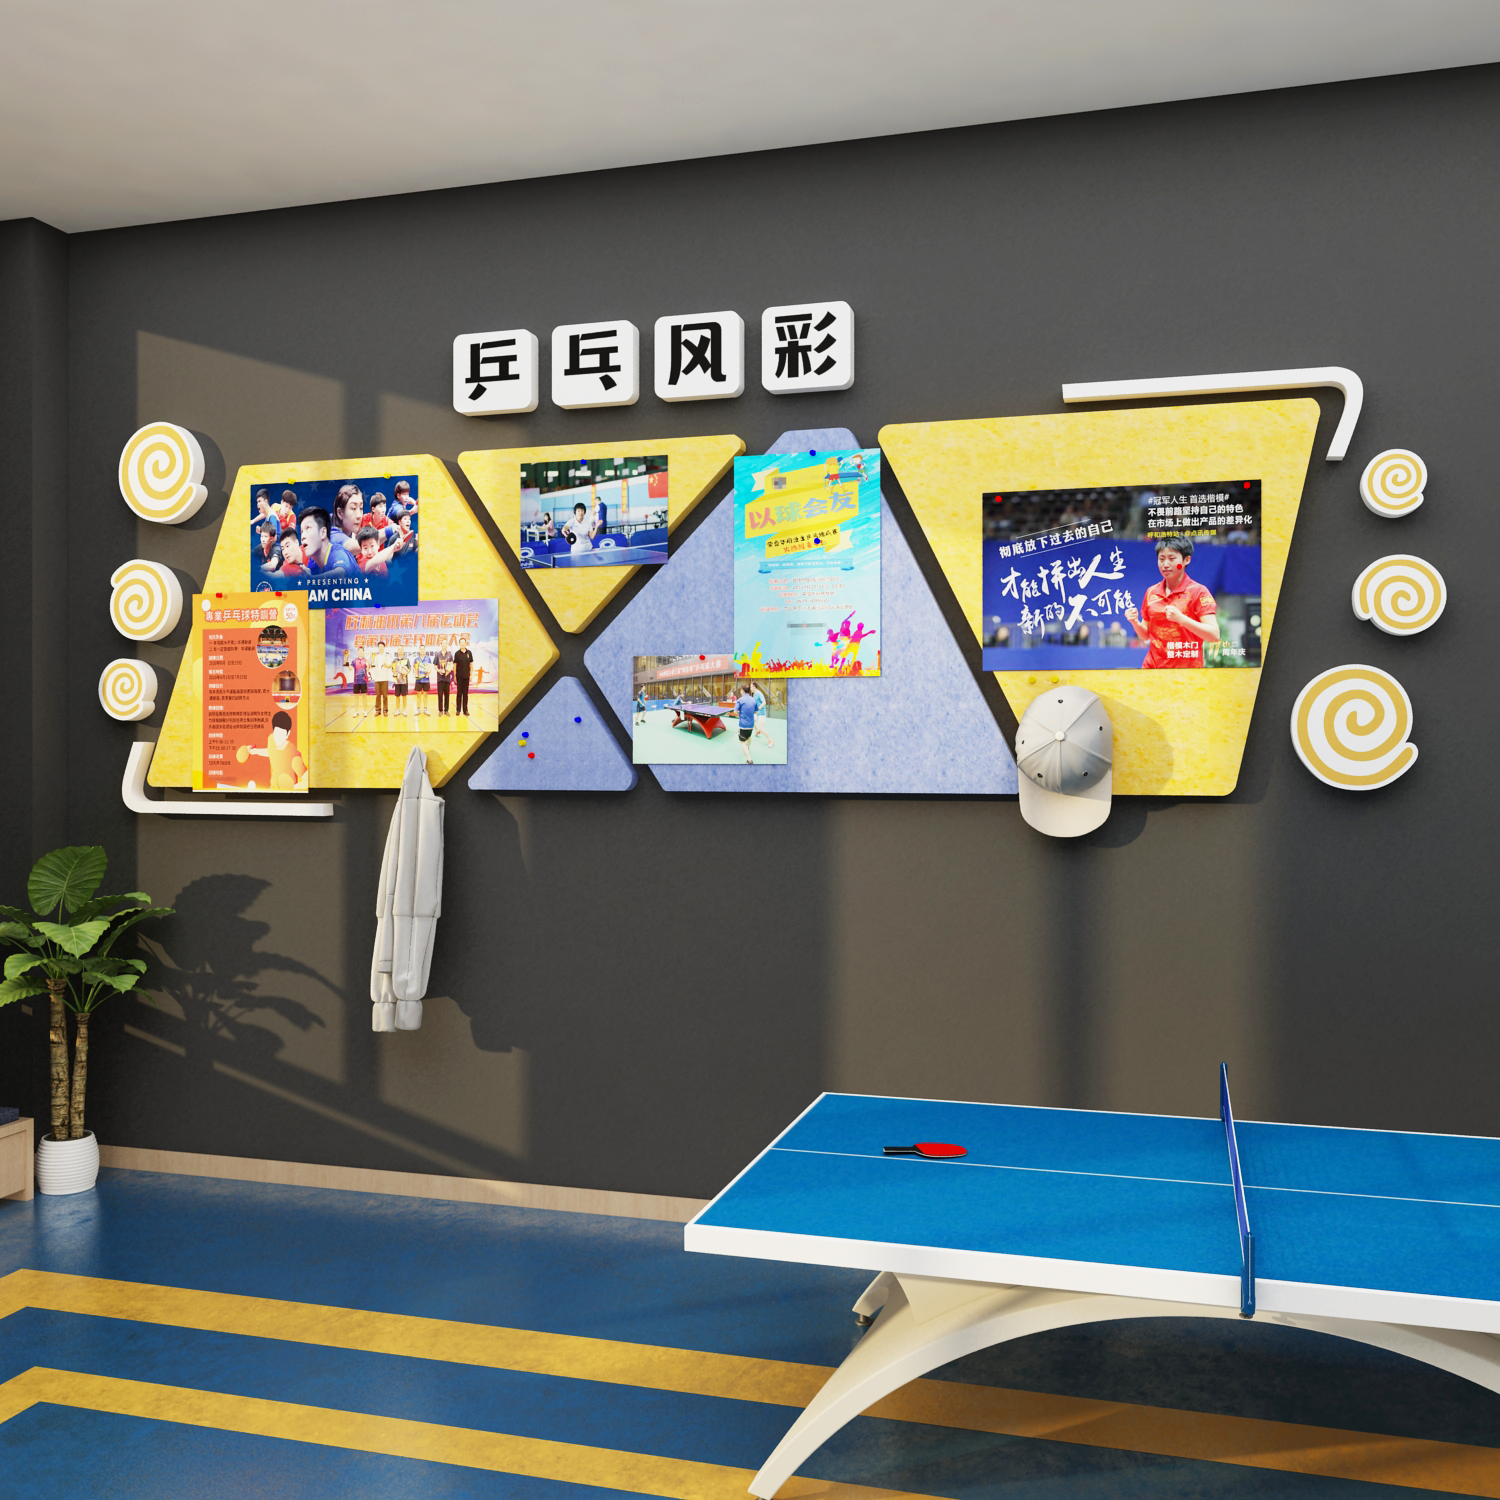 乒乓球馆室文化墙面装饰画海报宣传活动室布置照片风采展示毛毡贴图片